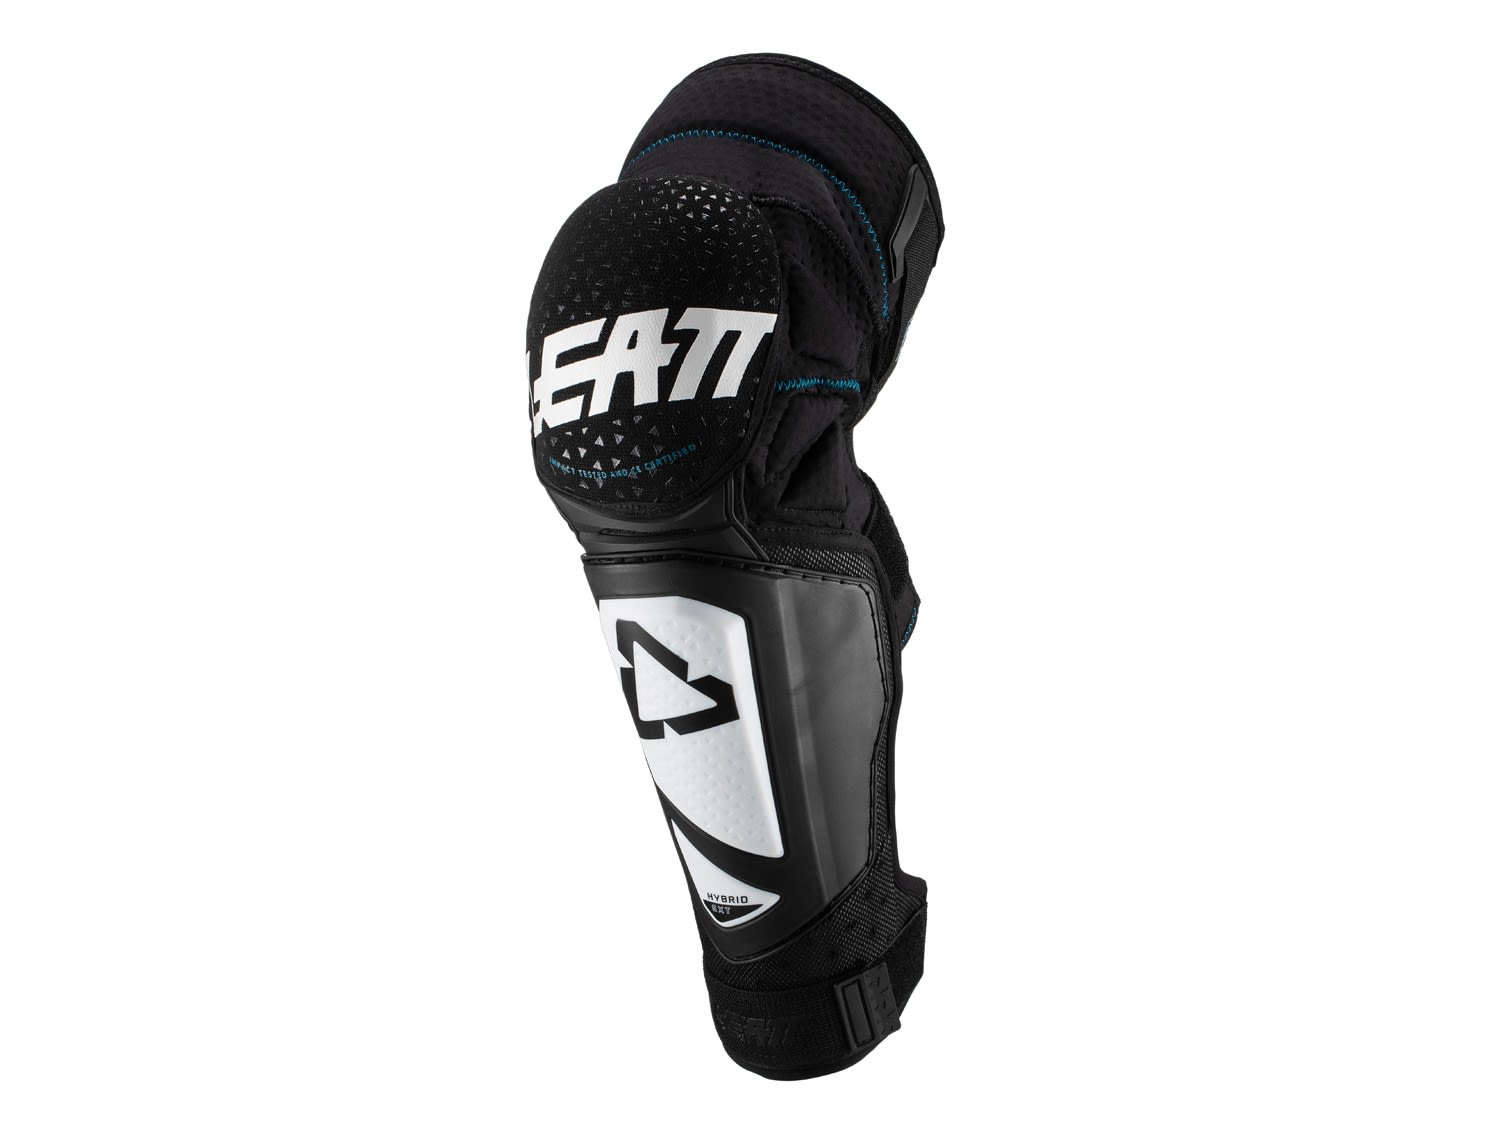 Leatt Knee und Shin Guard 3DF Hybrid EXT Junior Schwarz- Knieprotektoren- Grsse One Size - Farbe White - Black unter Leatt